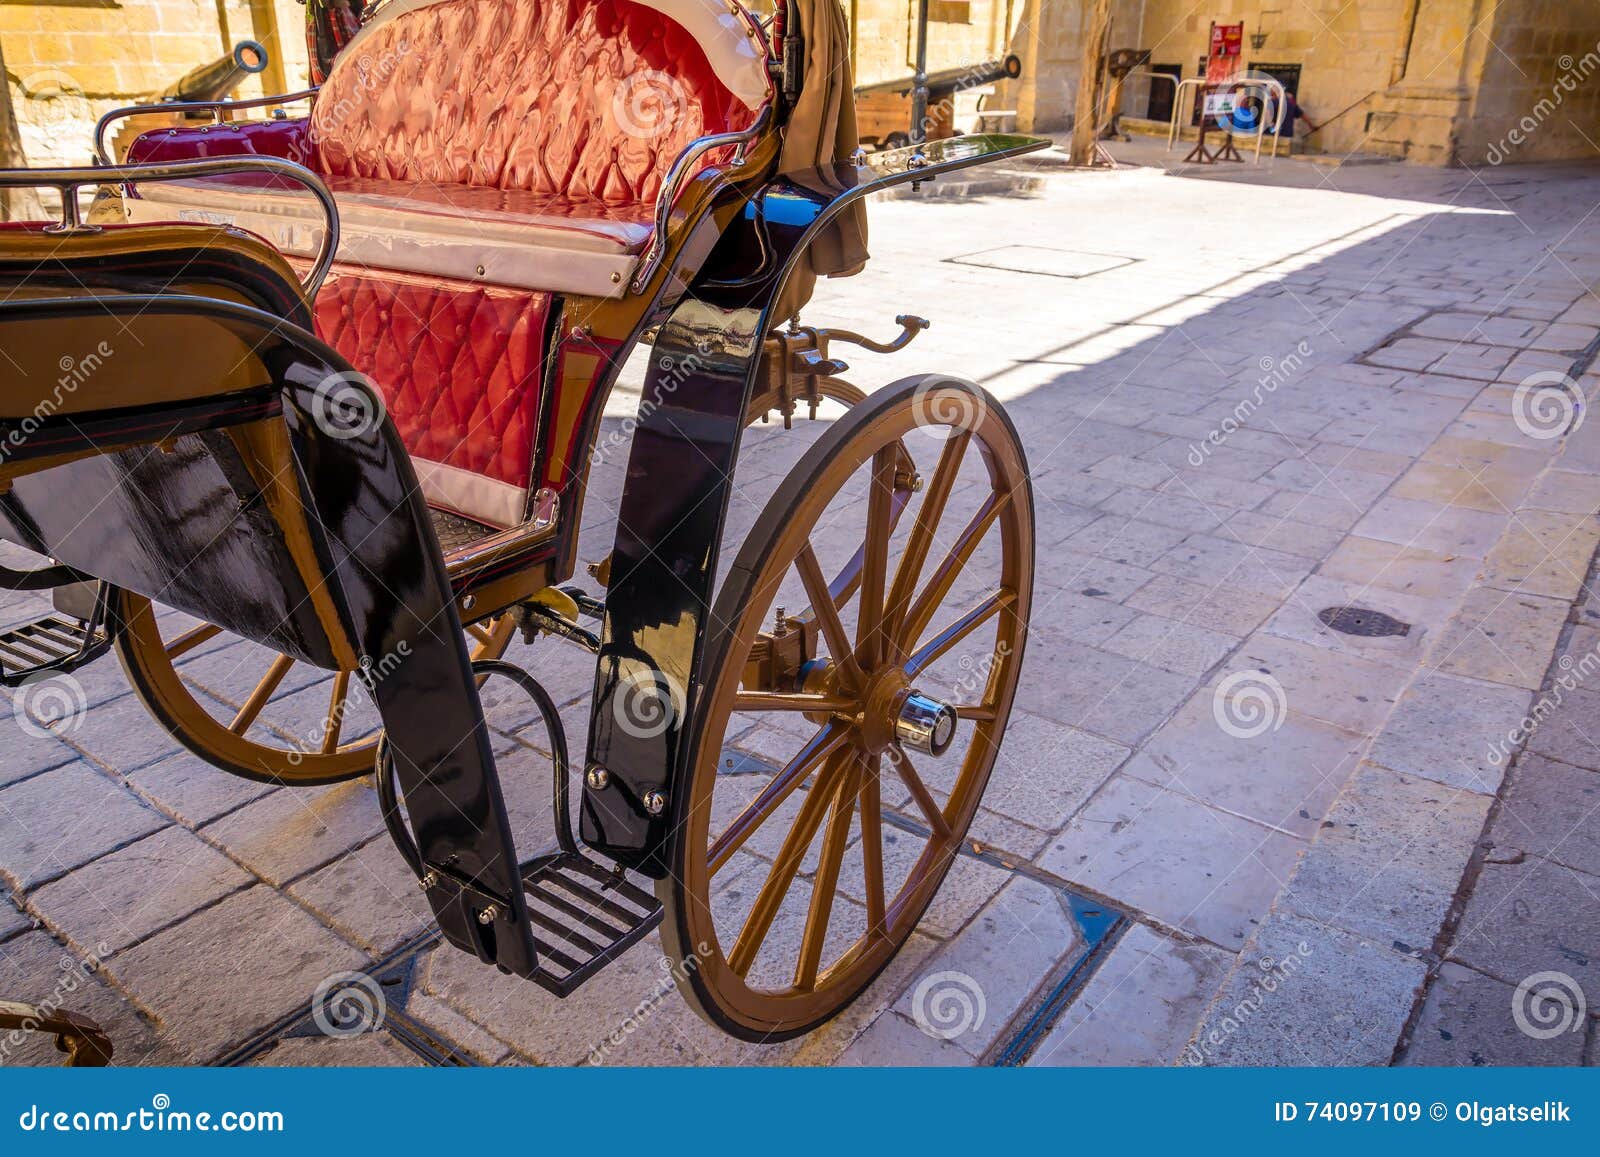 Vervoer op de straat in Malta. Vervoer op de straat van Mdina-stad in Malta